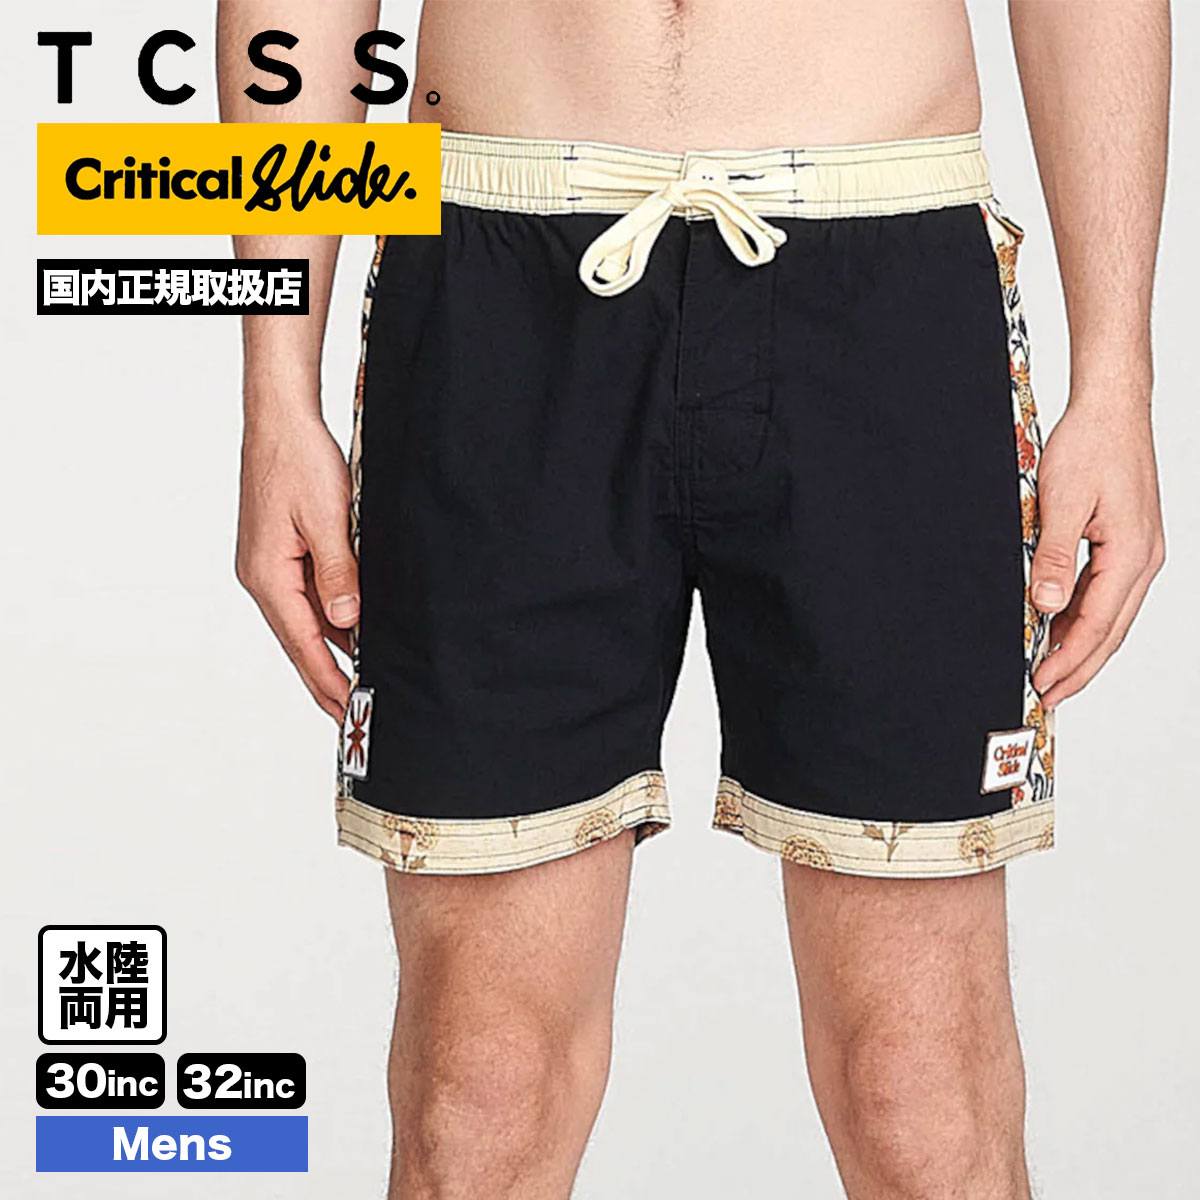 TCSS／Critical Slide クリティカルスライドソサエティ (ティーシーエスエス)正規品販売店、ジャックオーシャンスポーツ